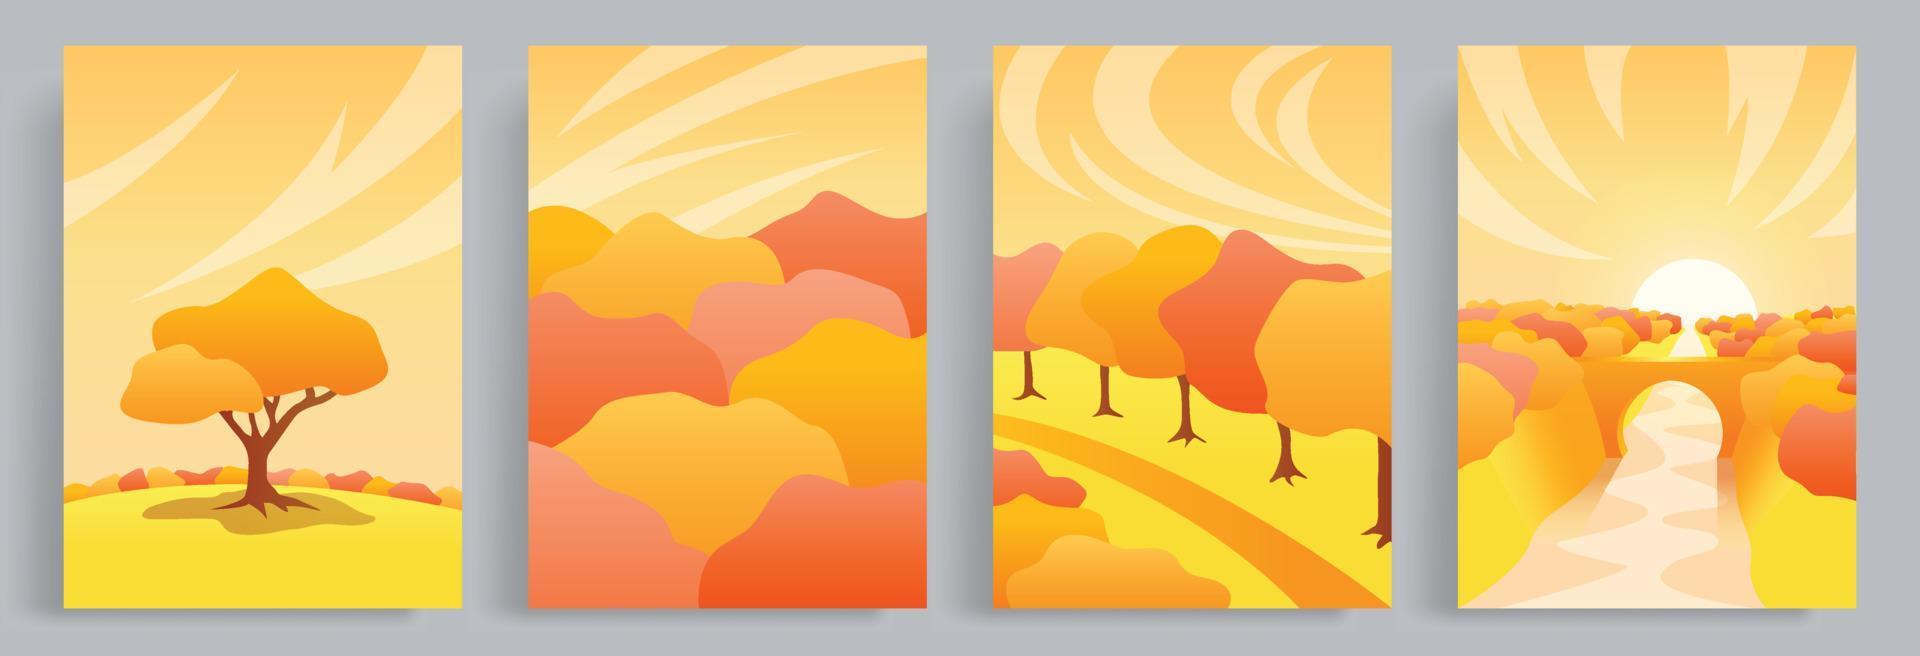 4 Sammlungen von Herbstvektorillustrationen mit einer warmen, hygge und gemütlichen Atmosphäre. Blick auf Wald und Bäume, die sich im Herbst rötlich färben. geeignet für Poster, Buchcover, Broschüre, Buchcover. vektor